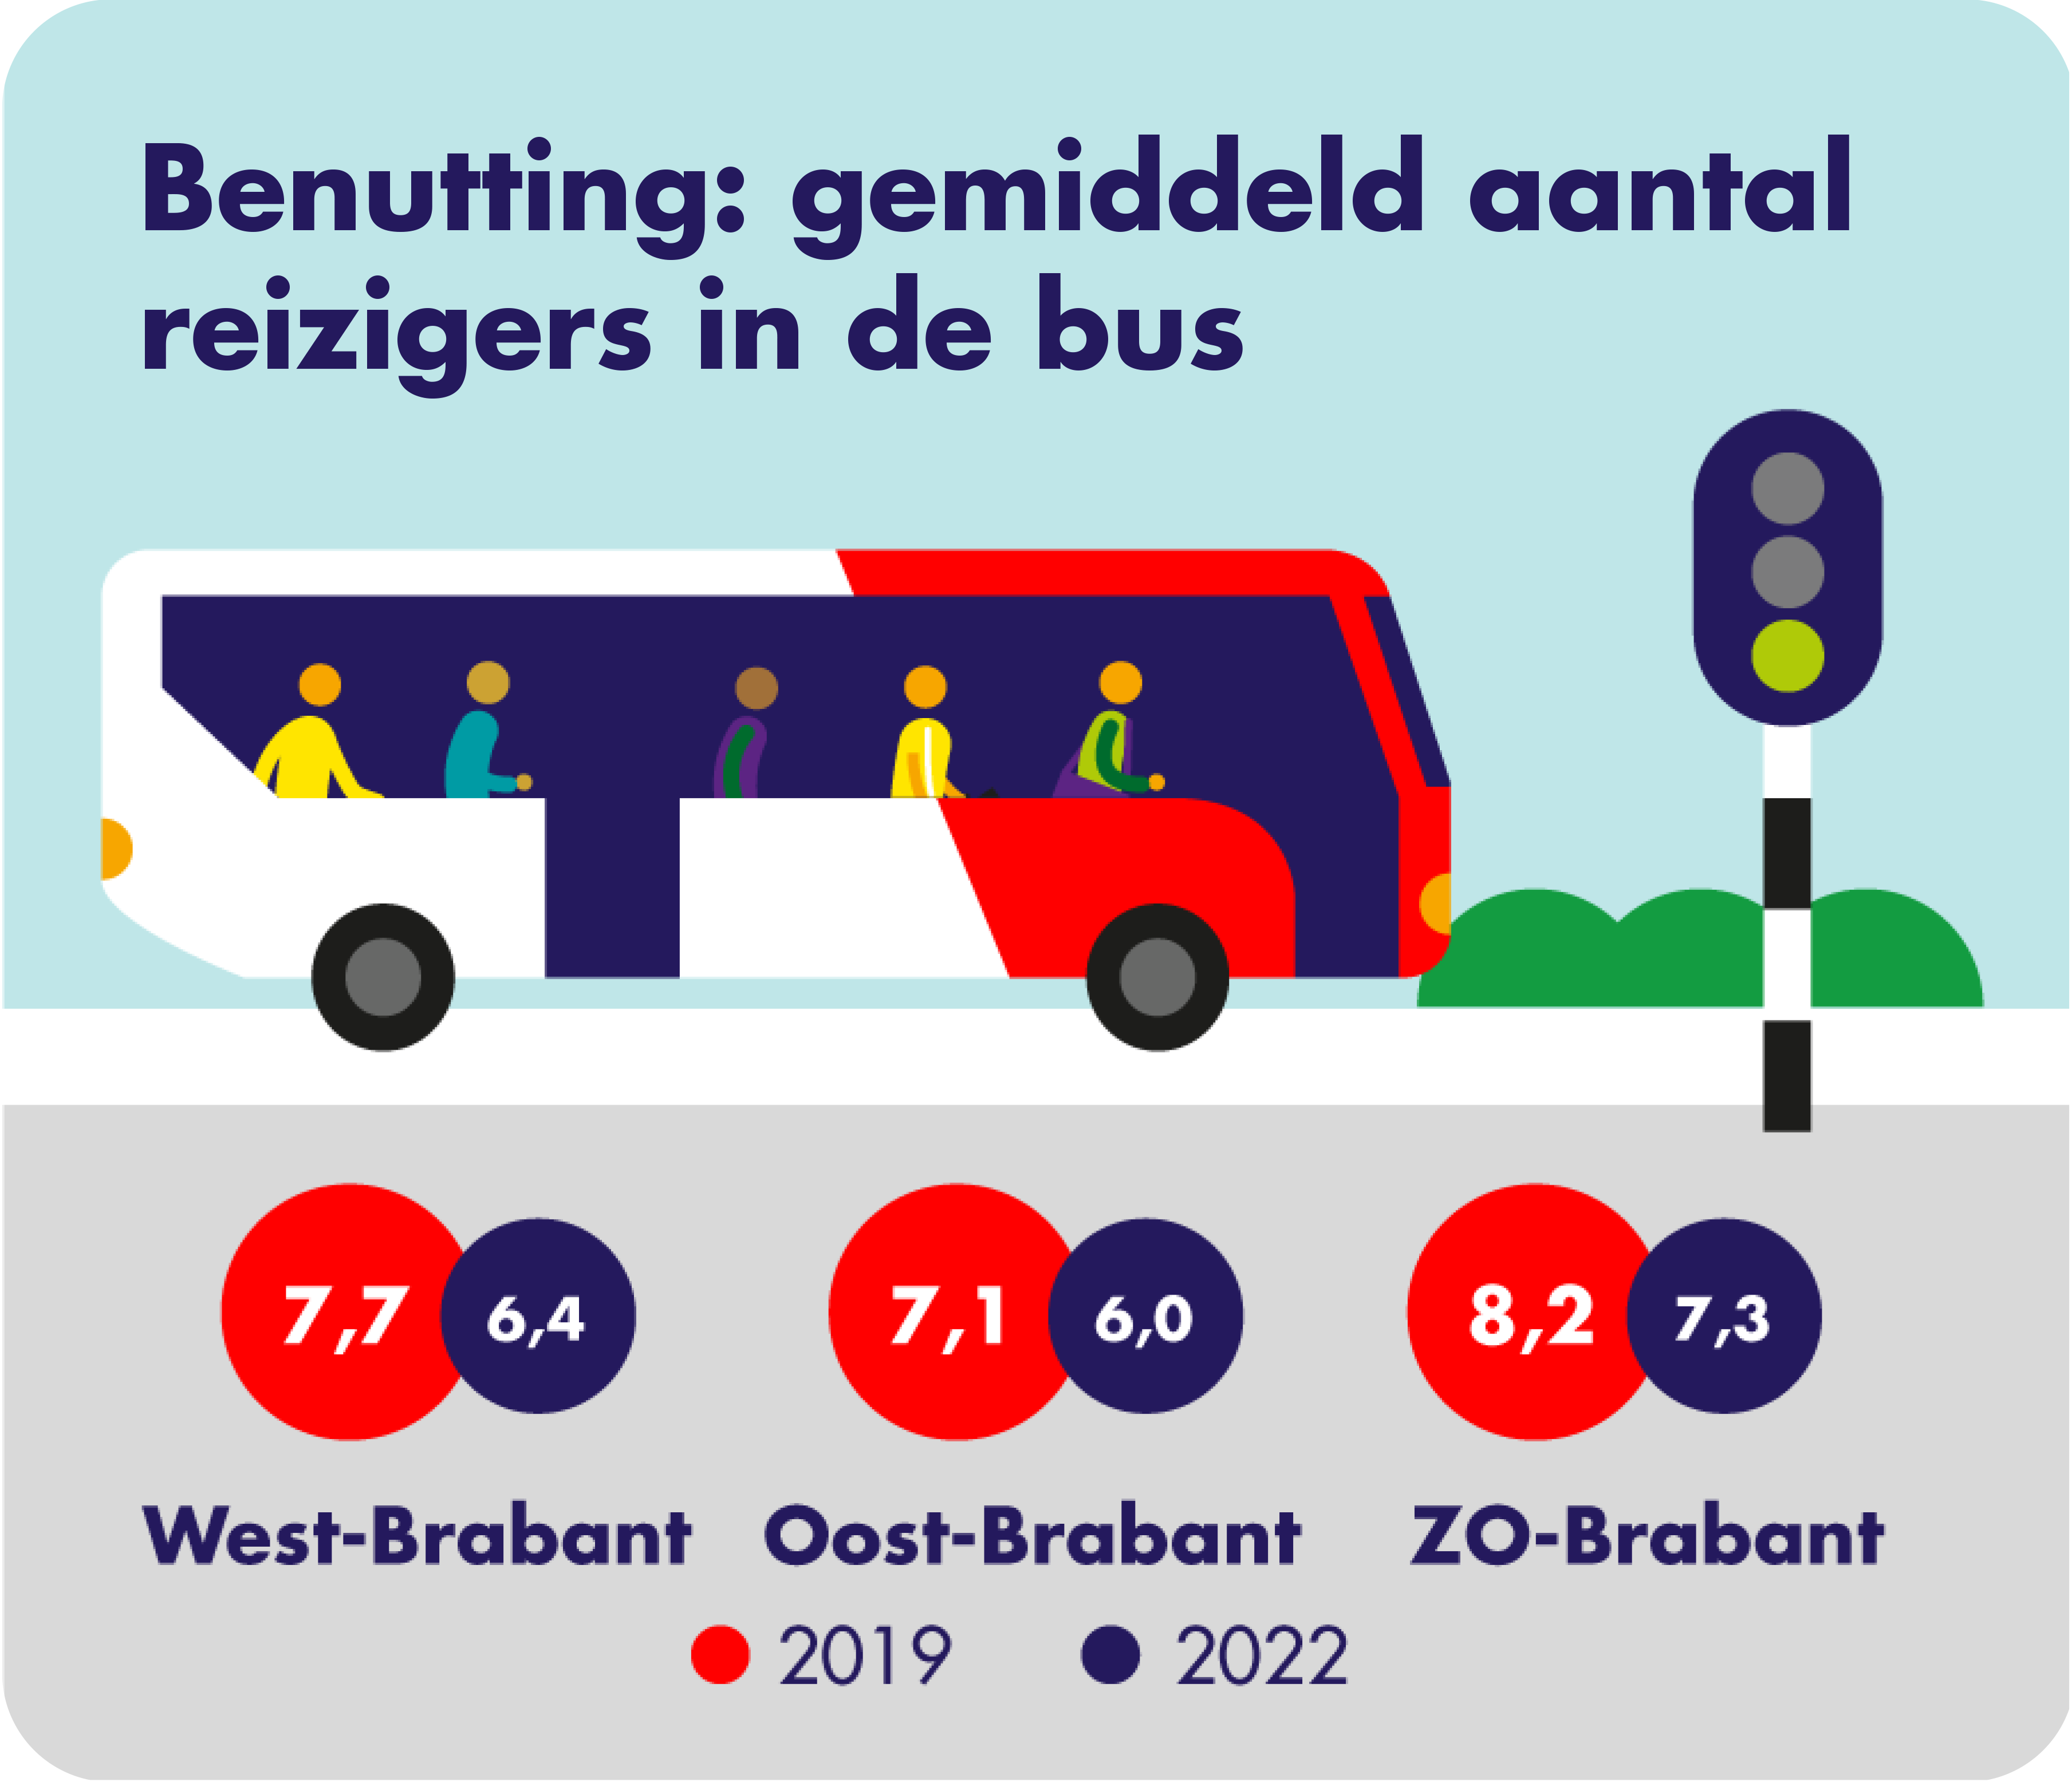 Op deze afbeelding is het gemiddeld aantal reizigers in de bus per concessiegebied weergegeven. Er wordt een vergelijking gemaakt tussen 2019 en 2022. In West-Brabant zitten er in 2019 gemiddeld 7,7 reizigers in de bus en in 2022 gemiddeld 6,4 reizigers. In Oost-Brabant zitten er in 2019 gemiddeld 7,1 reizigers in de bus en in 2022 zijn dat er gemiddeld 6,0. In Zuidoost-Brabant zitten er in 2019 gemiddeld 8,2 reizigers in de bus en in 2022 zijn dat er gemiddeld 7,3.